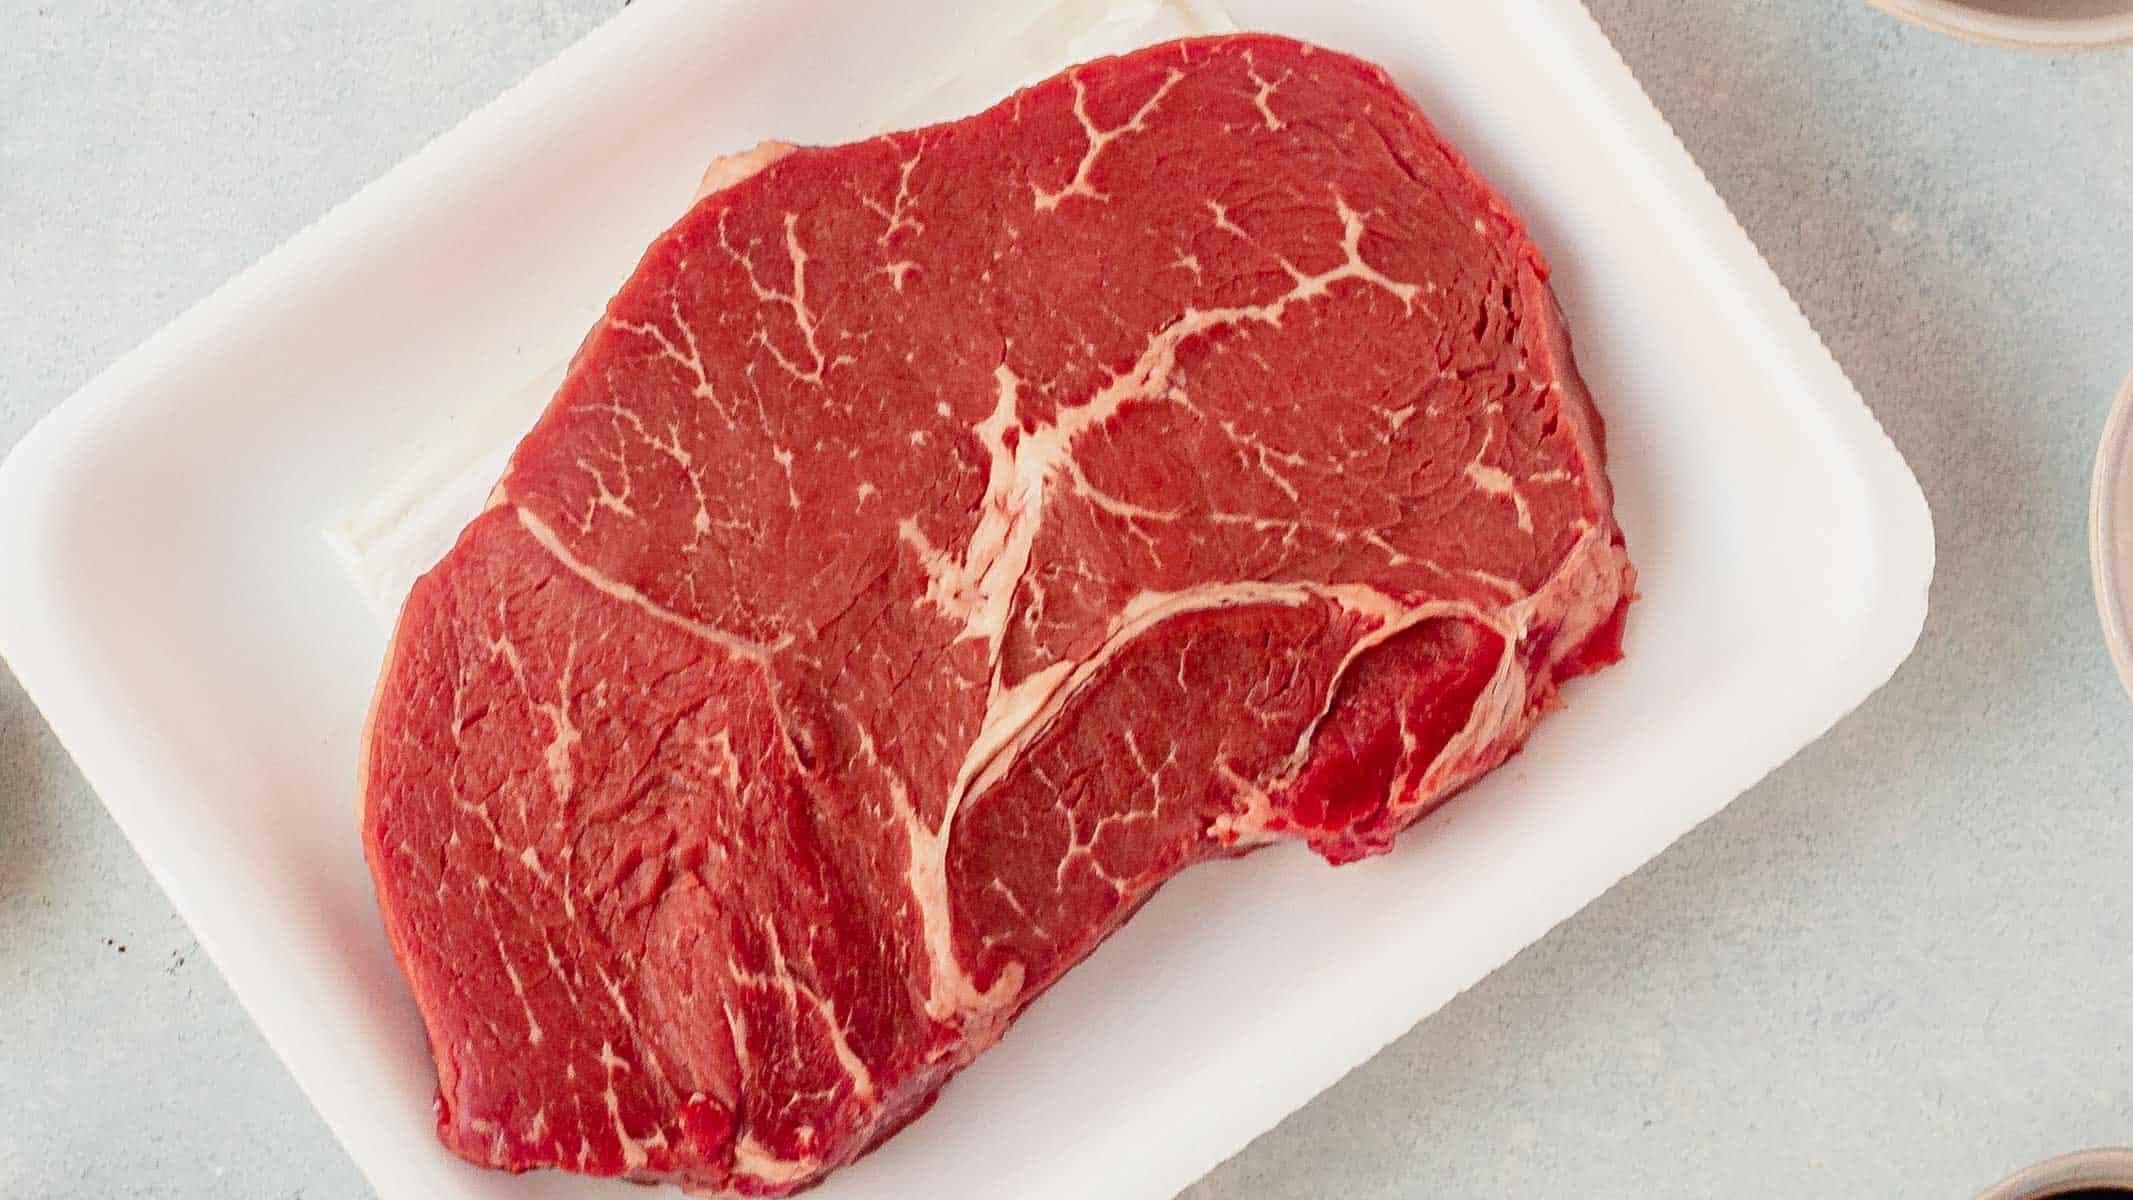 sirloin tip steak on a cutting board